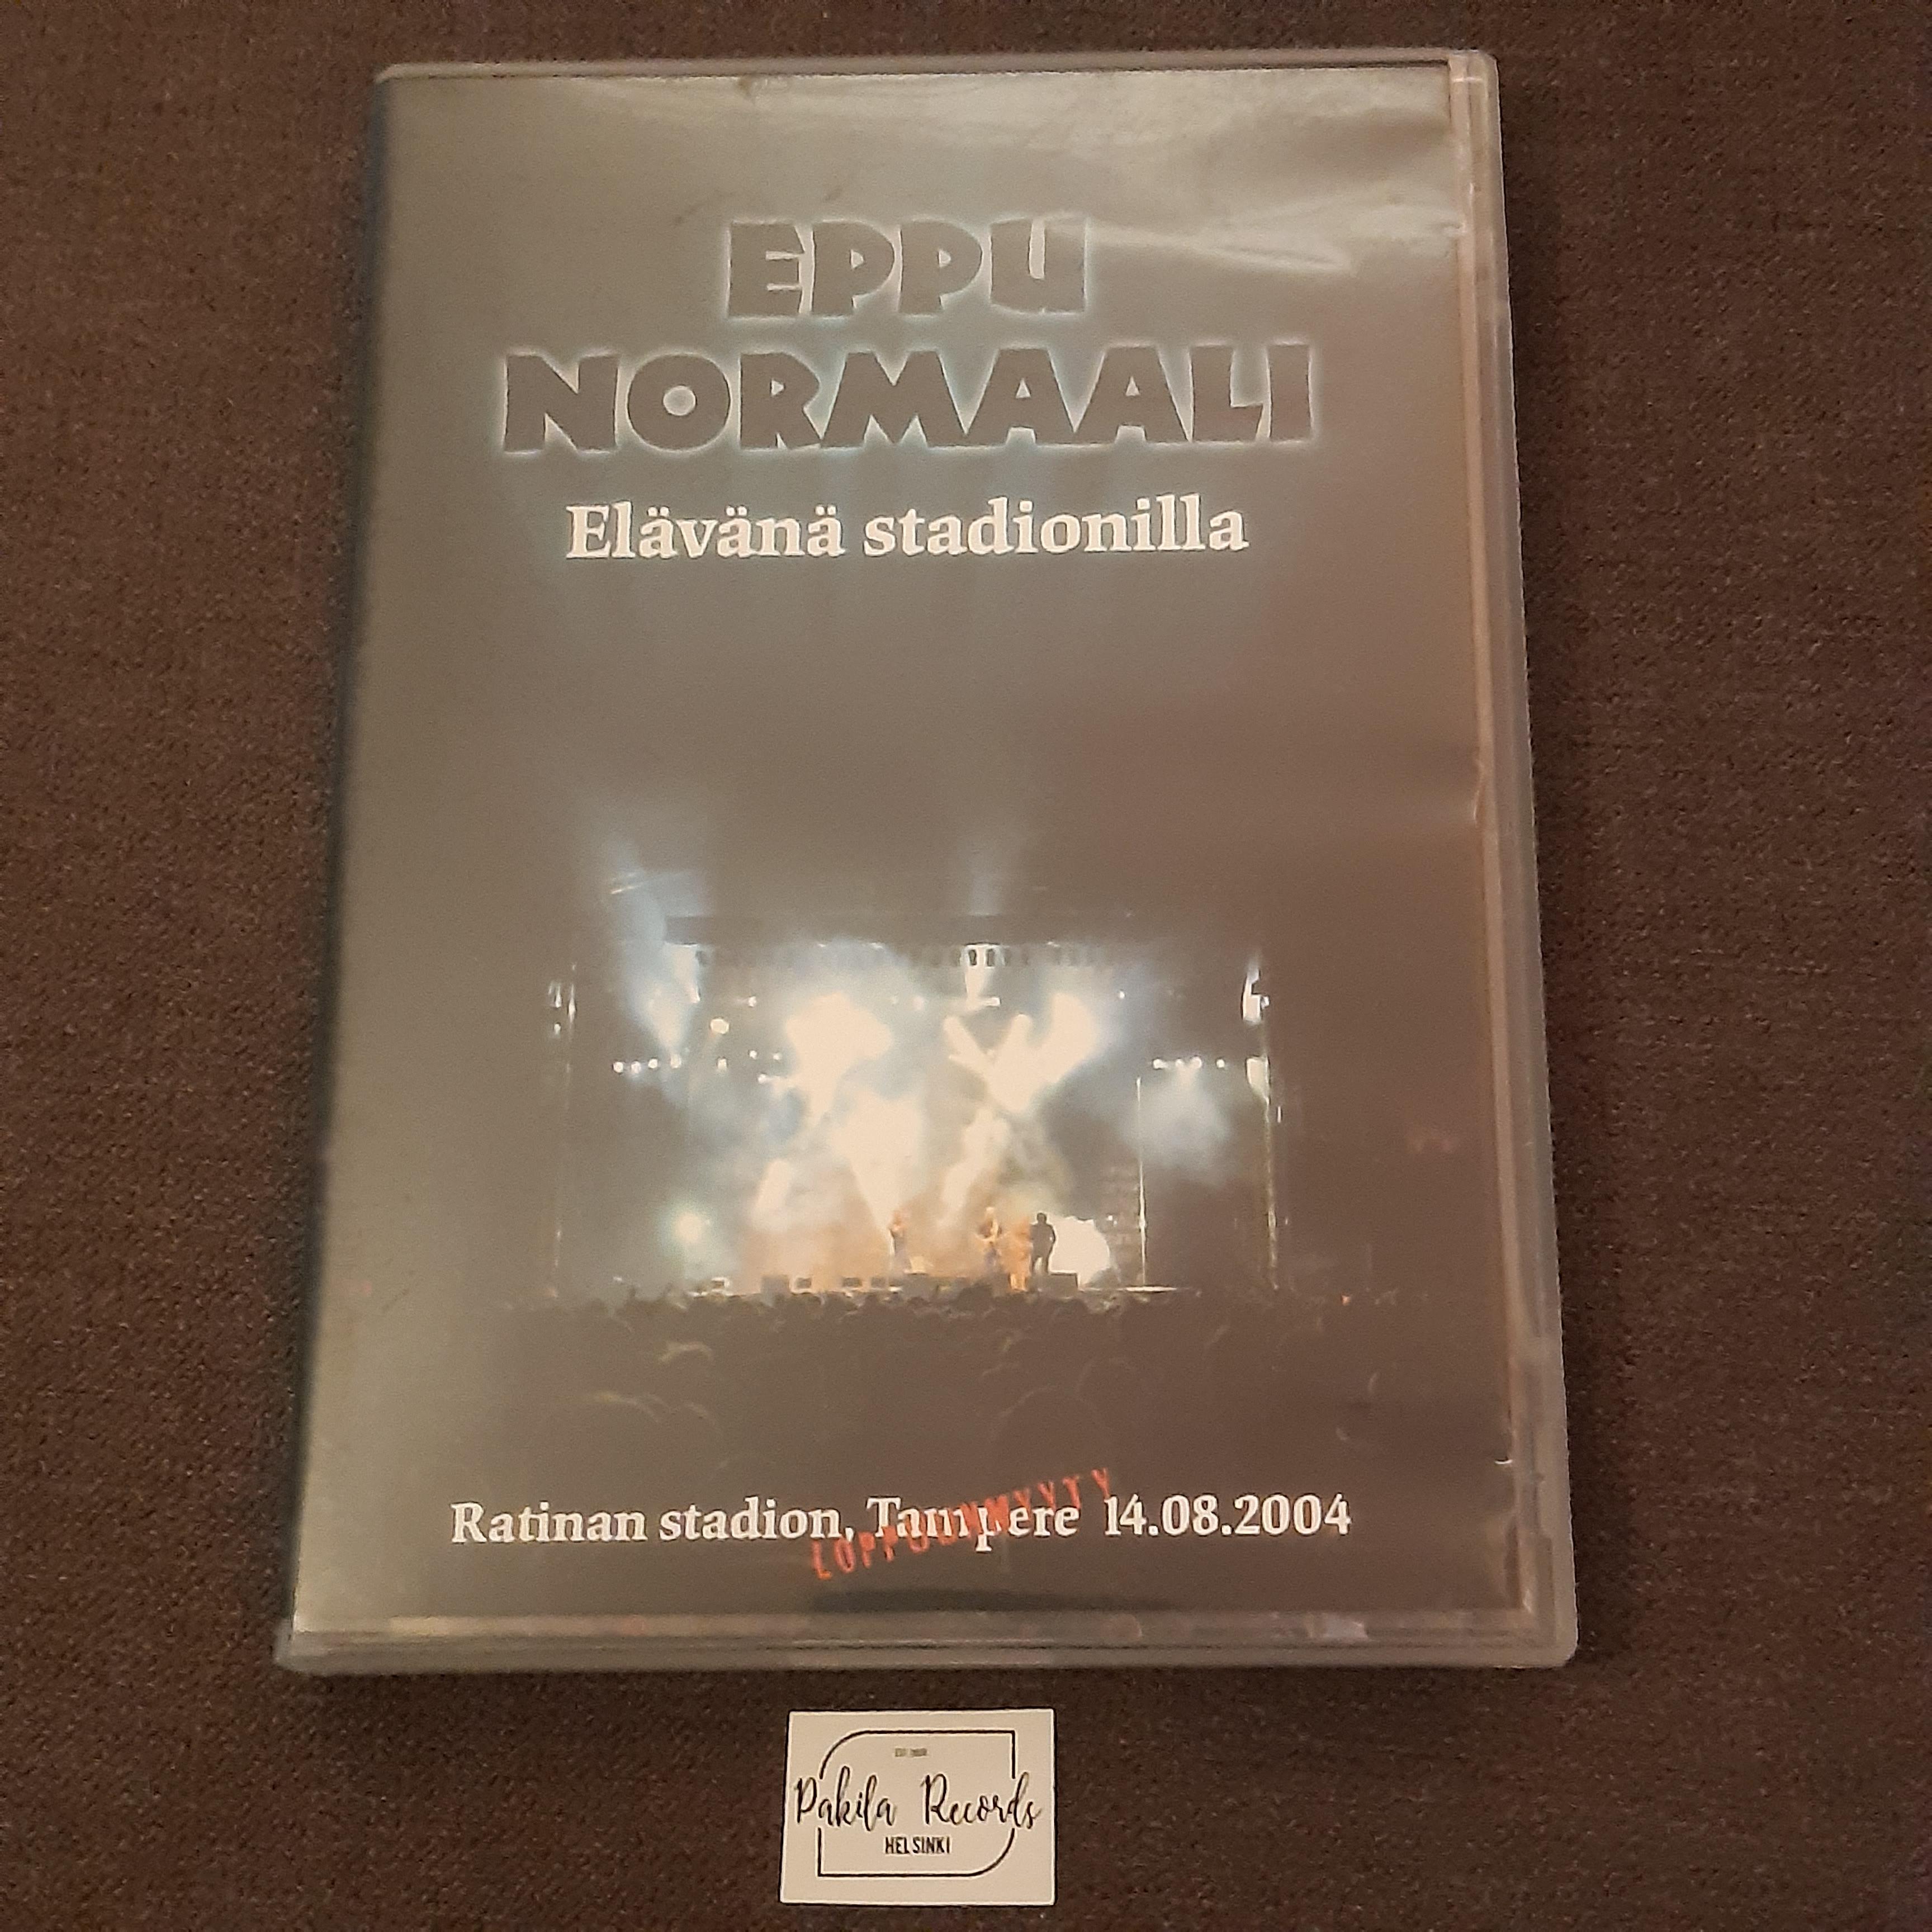 Eppu Normaali - Elävänä stadionilla - DVD (käytetty)